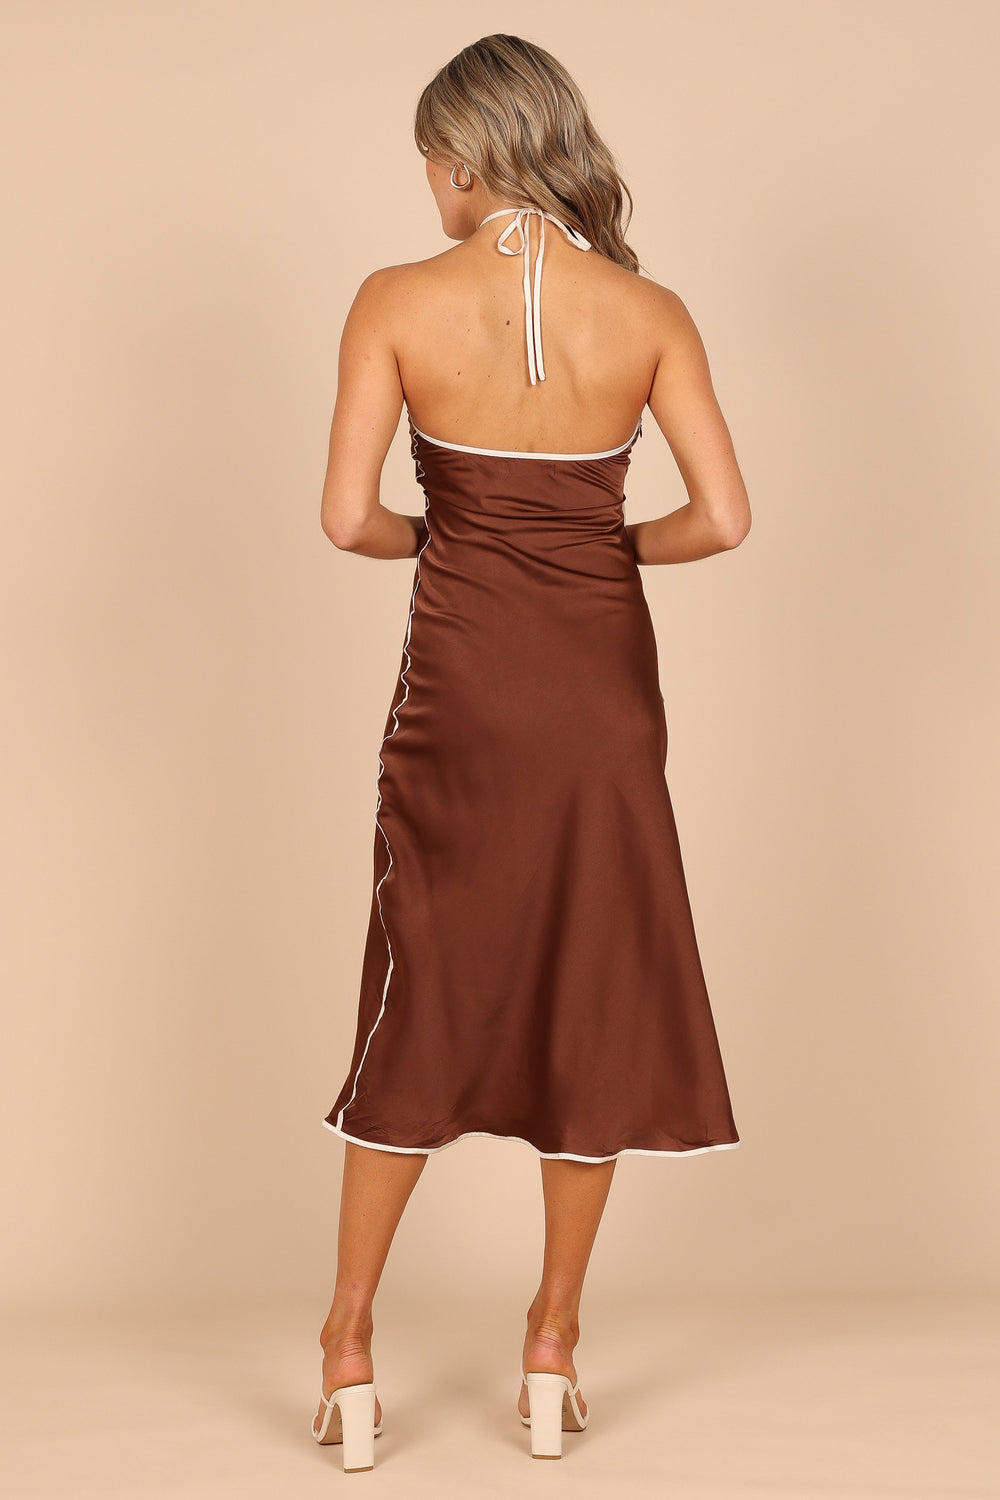 DRESSES @Jocelyn Contrast Strap Halter Neck Dress - Brown (waiting on bulk)